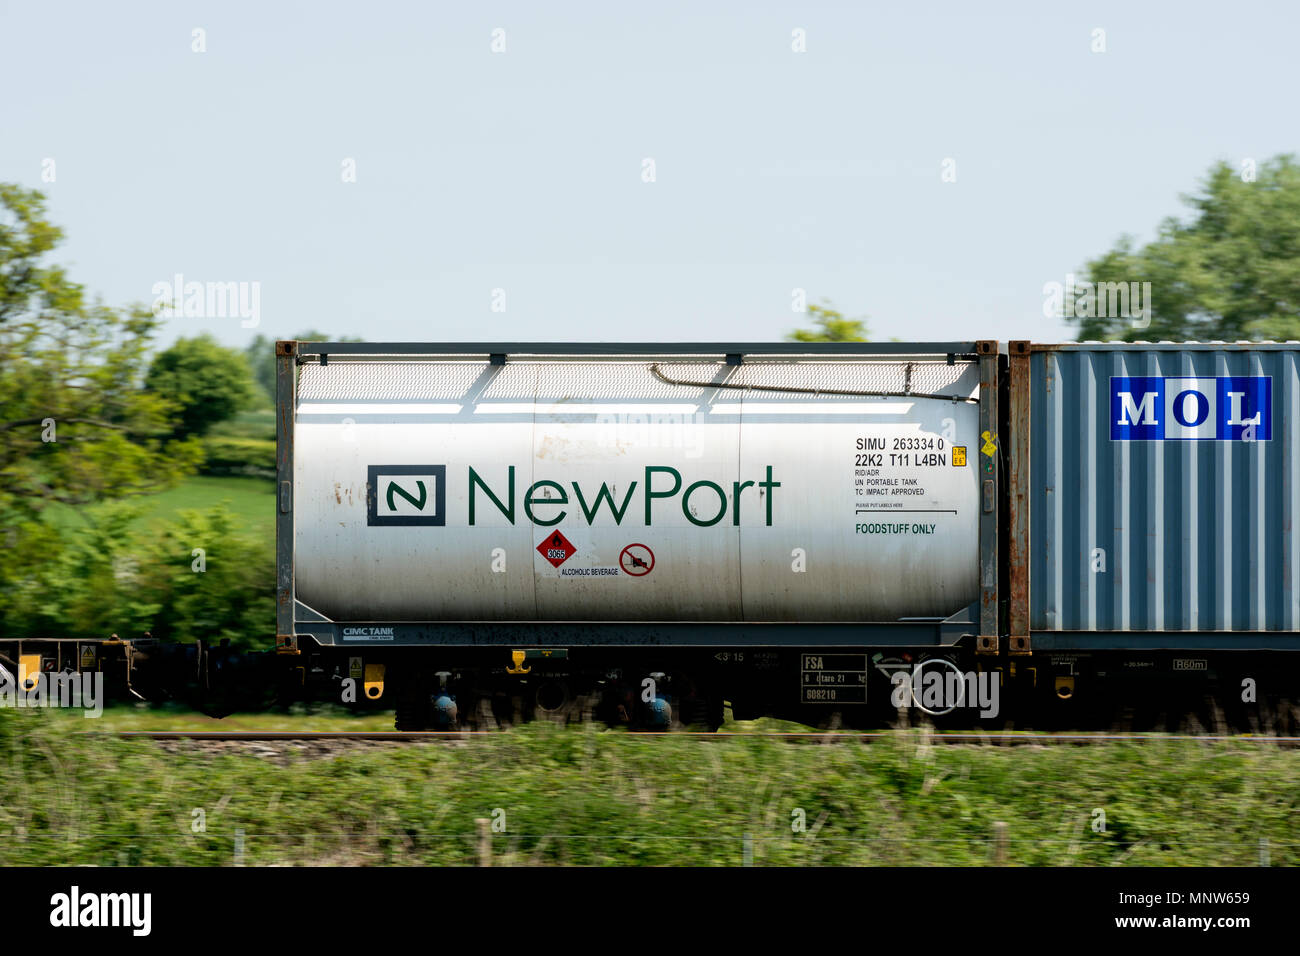 NewPort alkoholisches Getränk tank auf ein freightliner Zug, Großbritannien Stockfoto